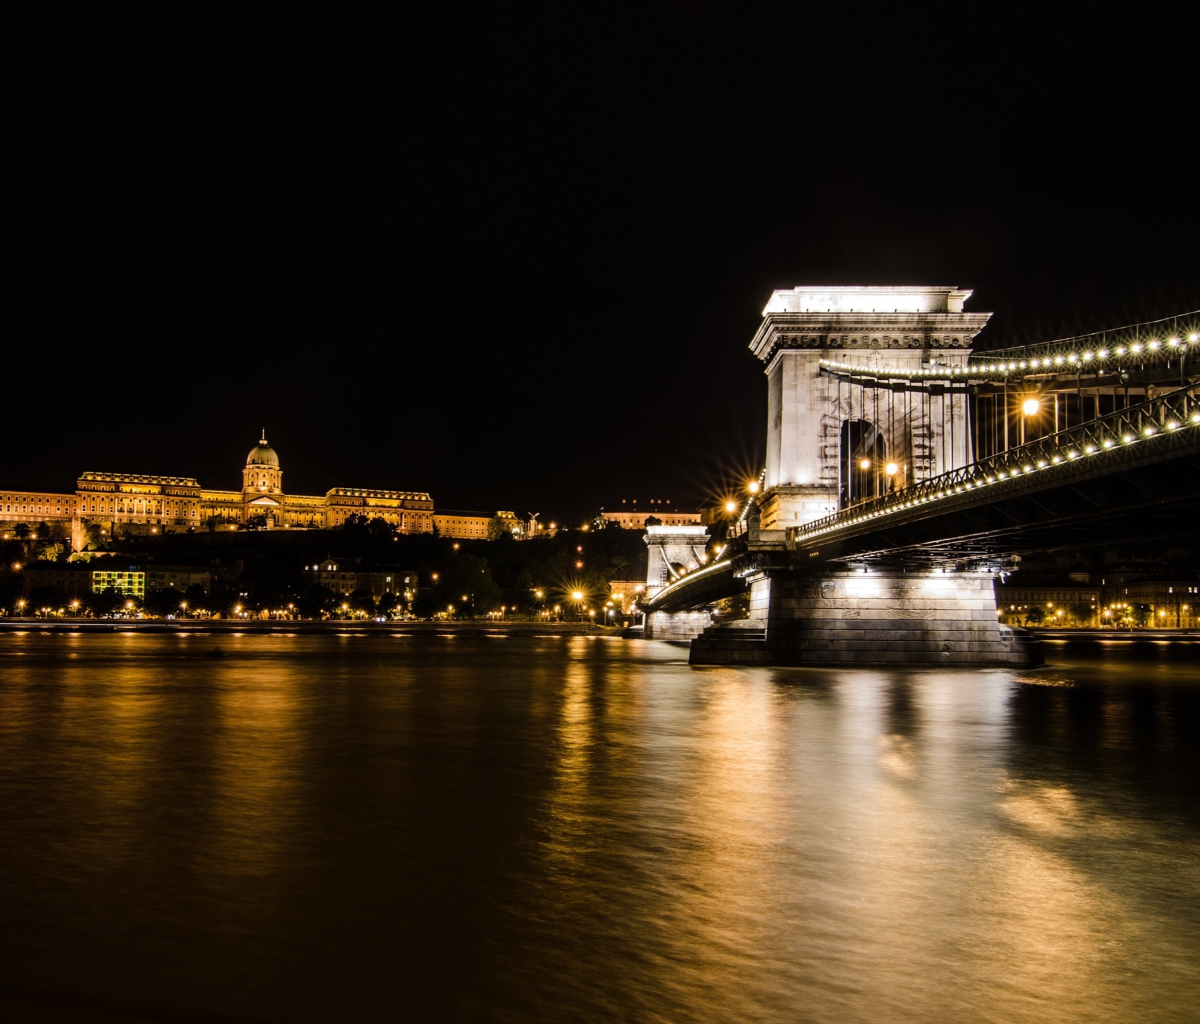 Das Chain Bridge at Night in Budapest Hungary Wallpaper 1200x1024